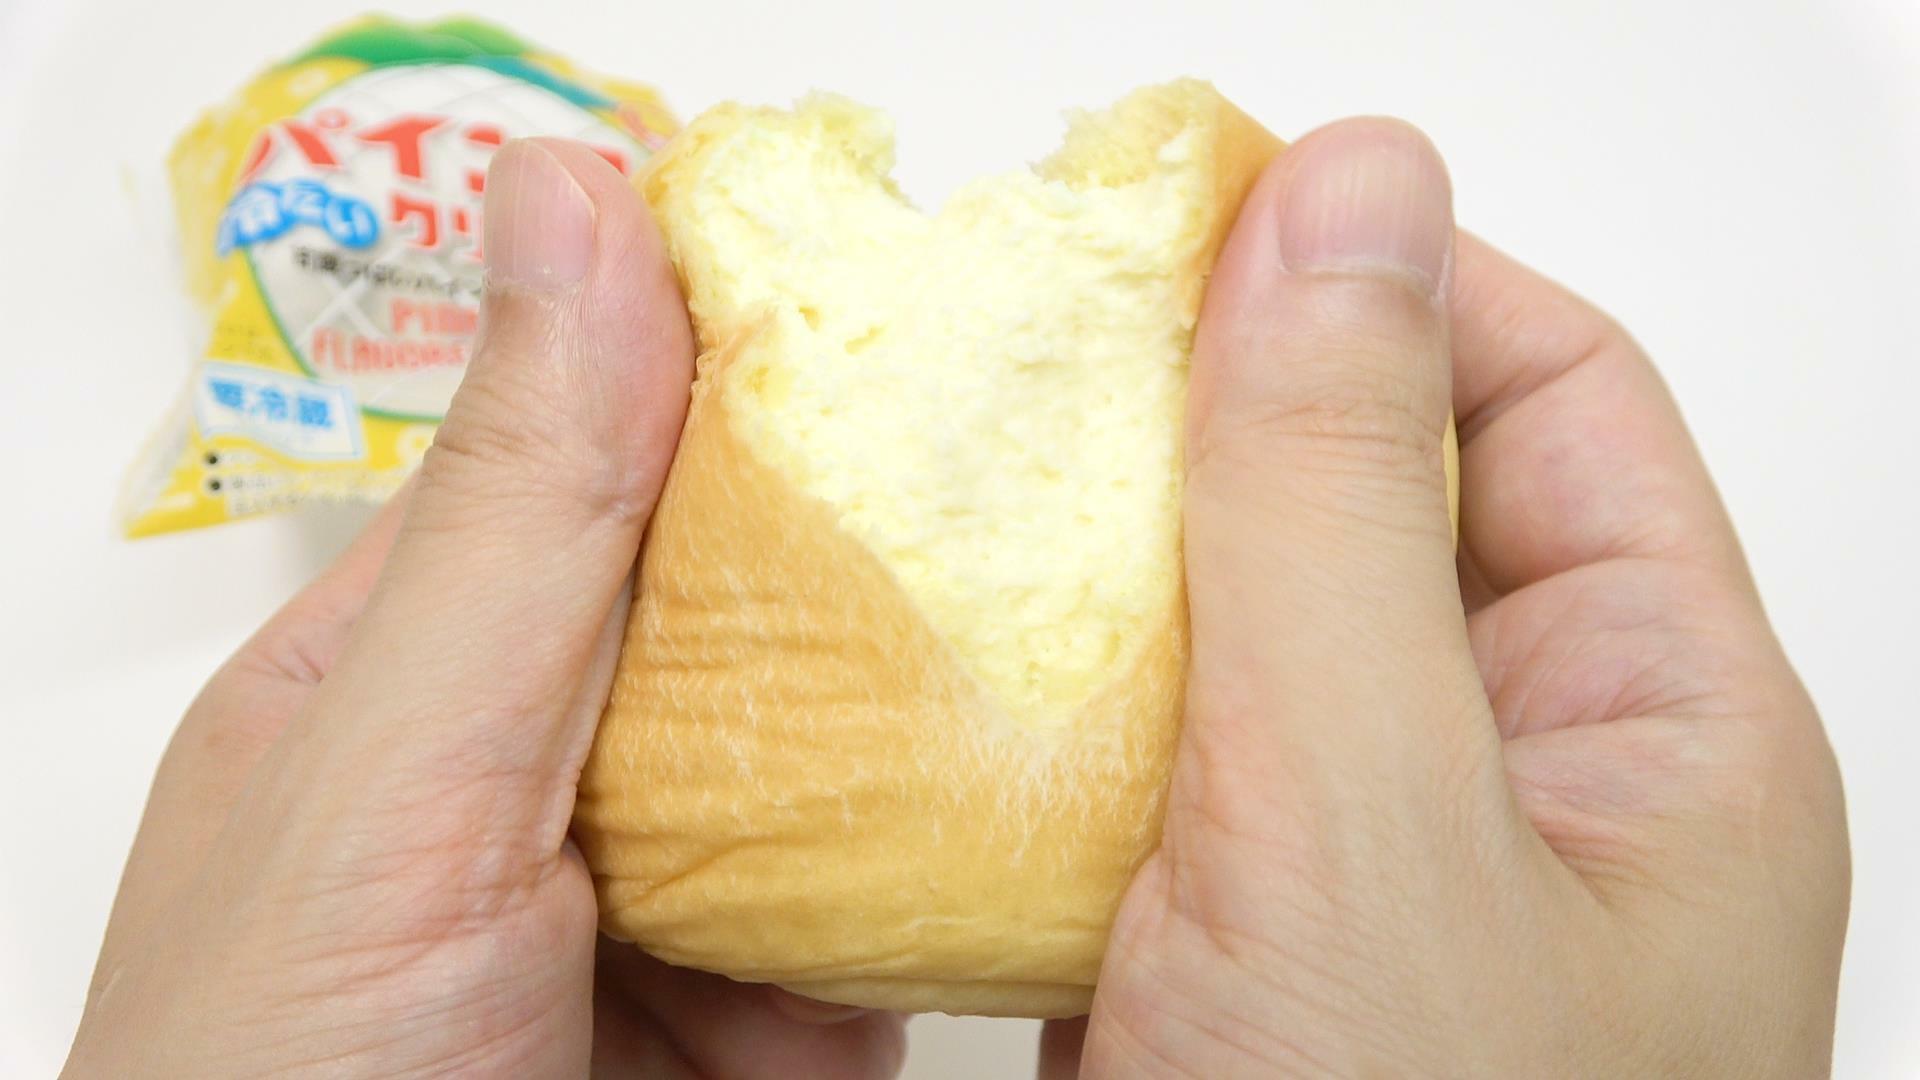 西日本限定販売のファミマ冷たい「パインアメクリームパン」を割ってみる